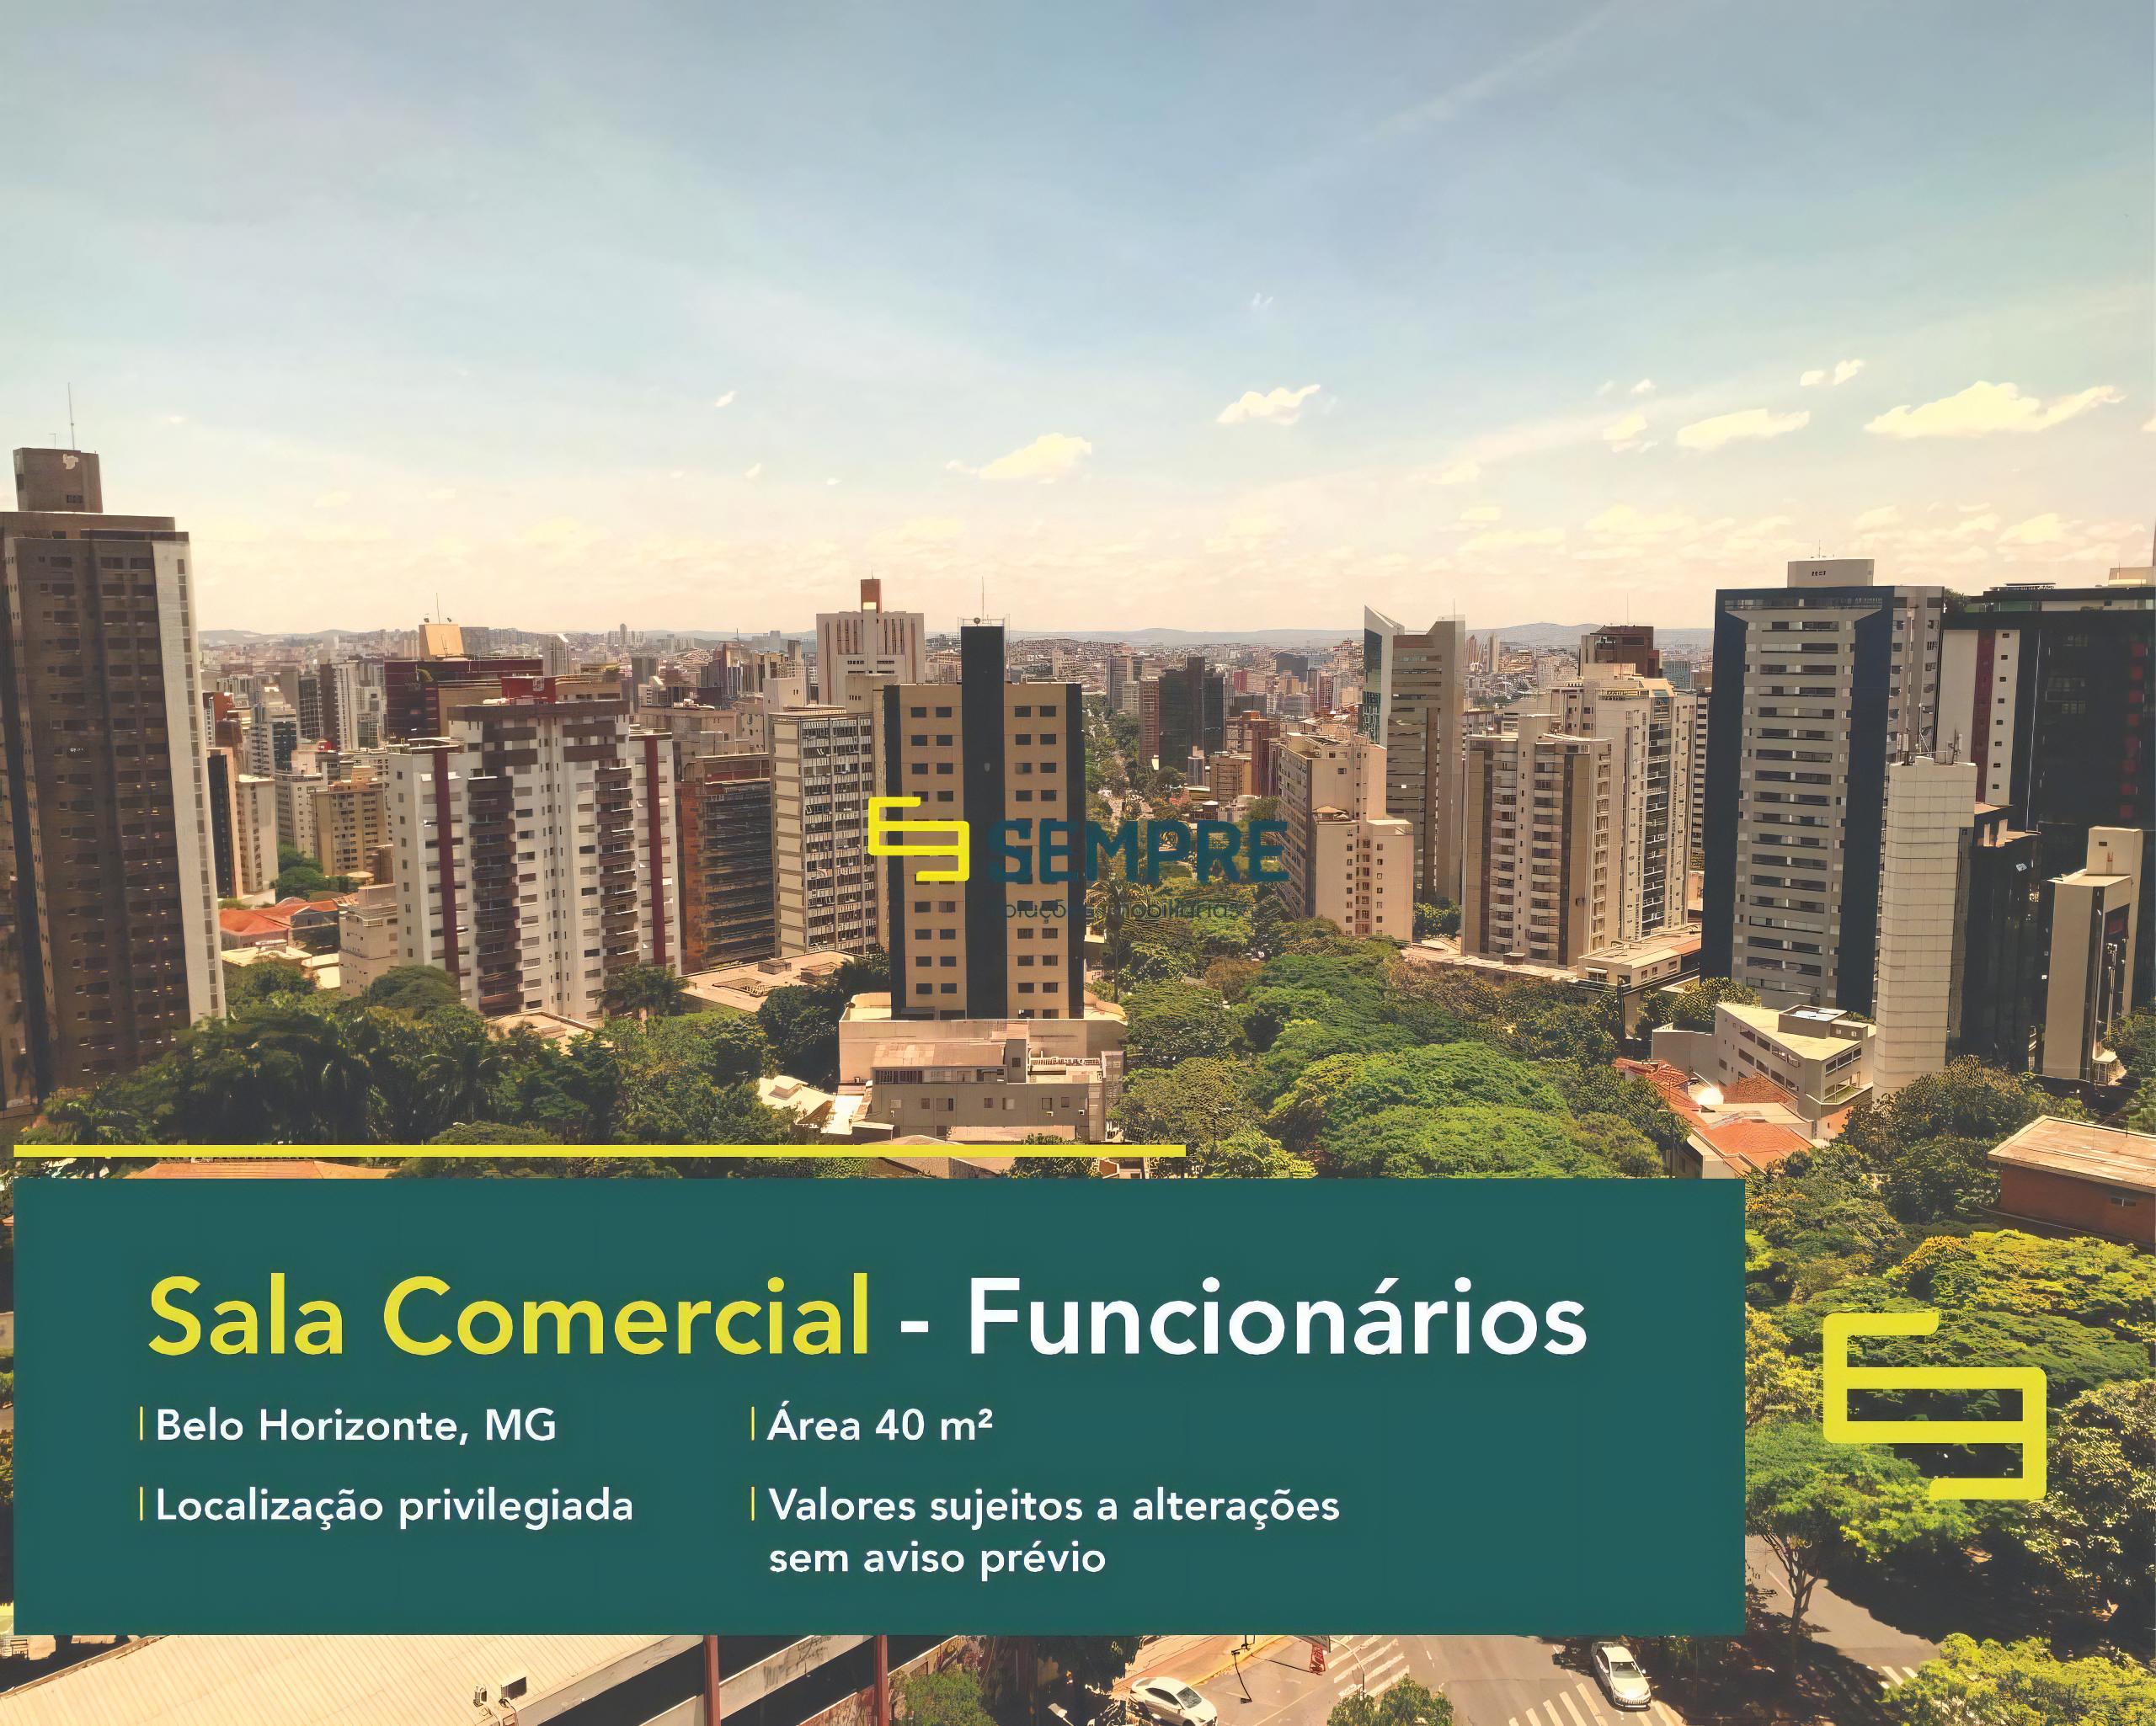 Sala comercial no Funcionários para alugar em Belo Horizonte, excelente localização. O estabelecimento comercial conta com área de 40,96 m².